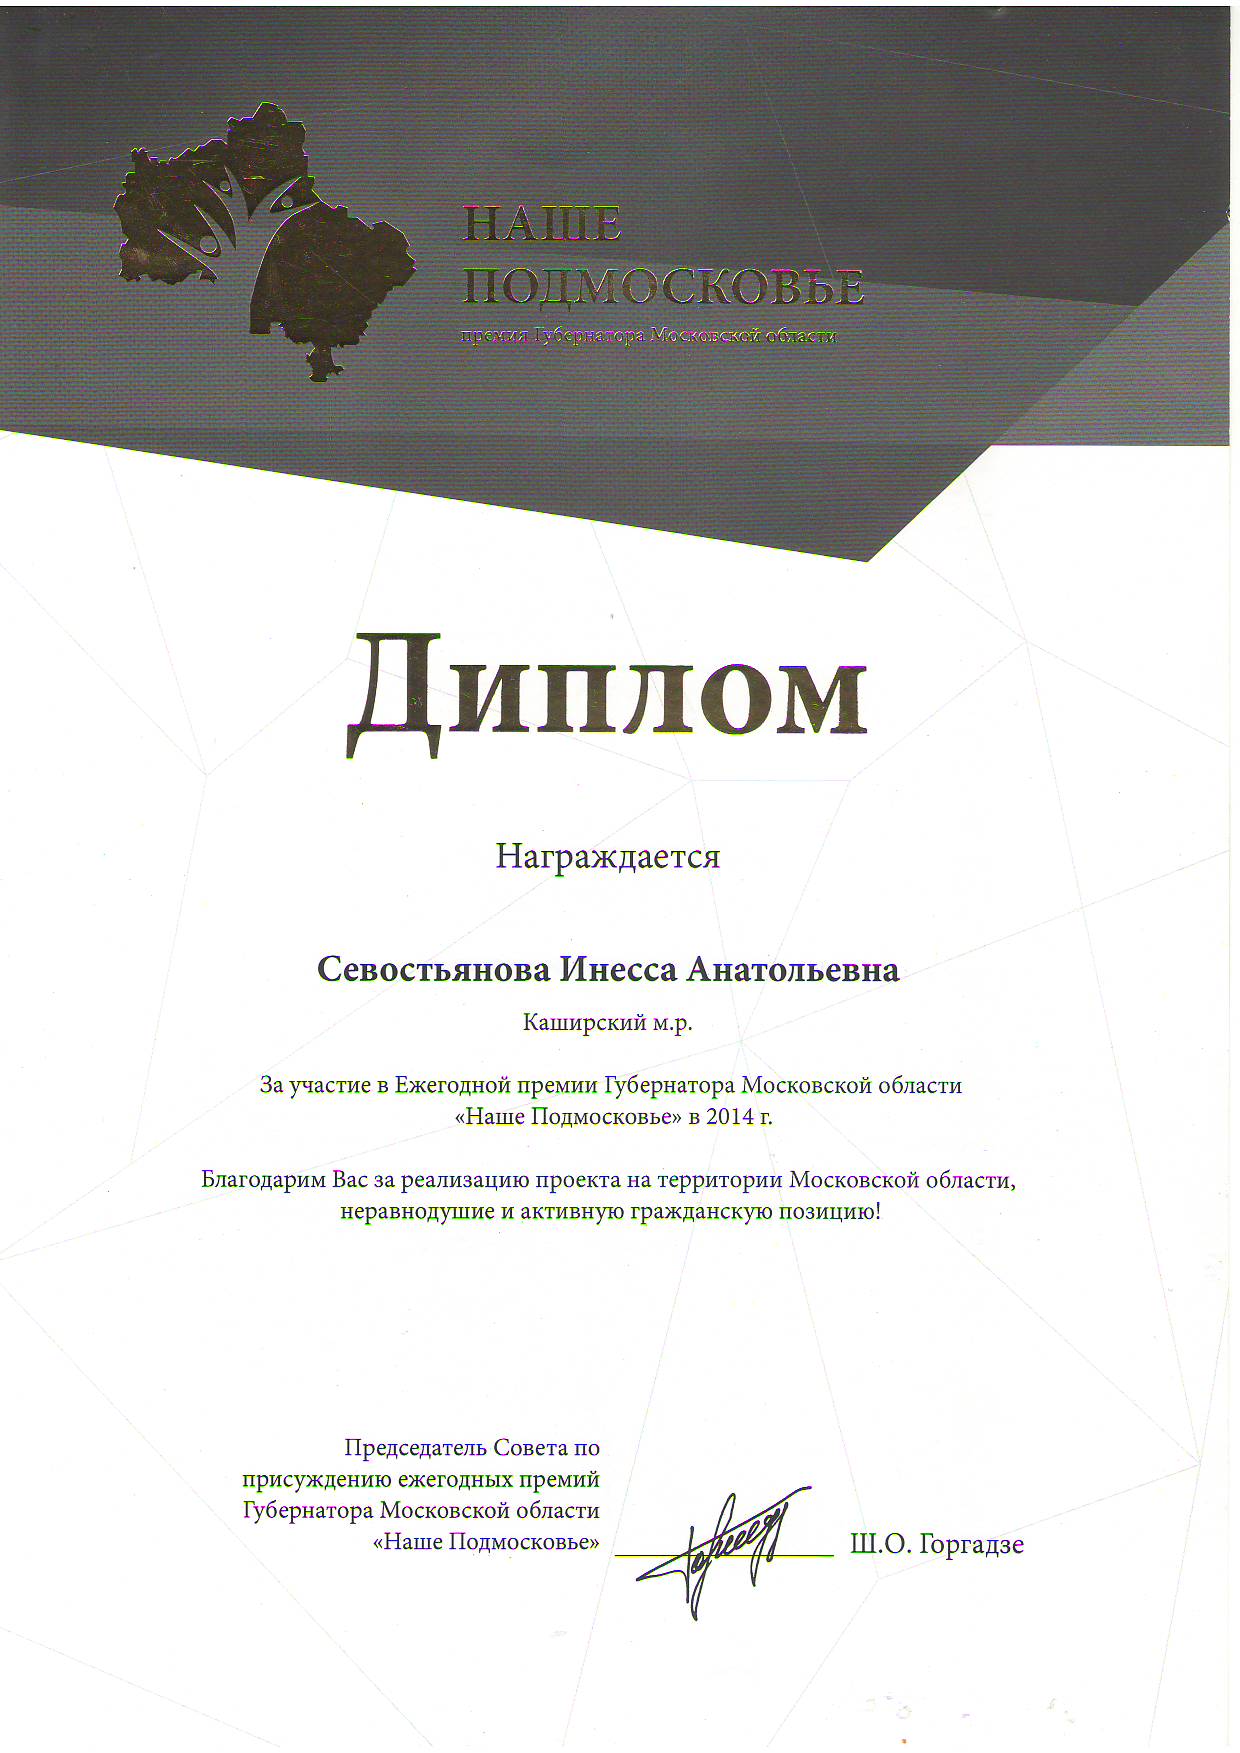 nasepodmoscov2014